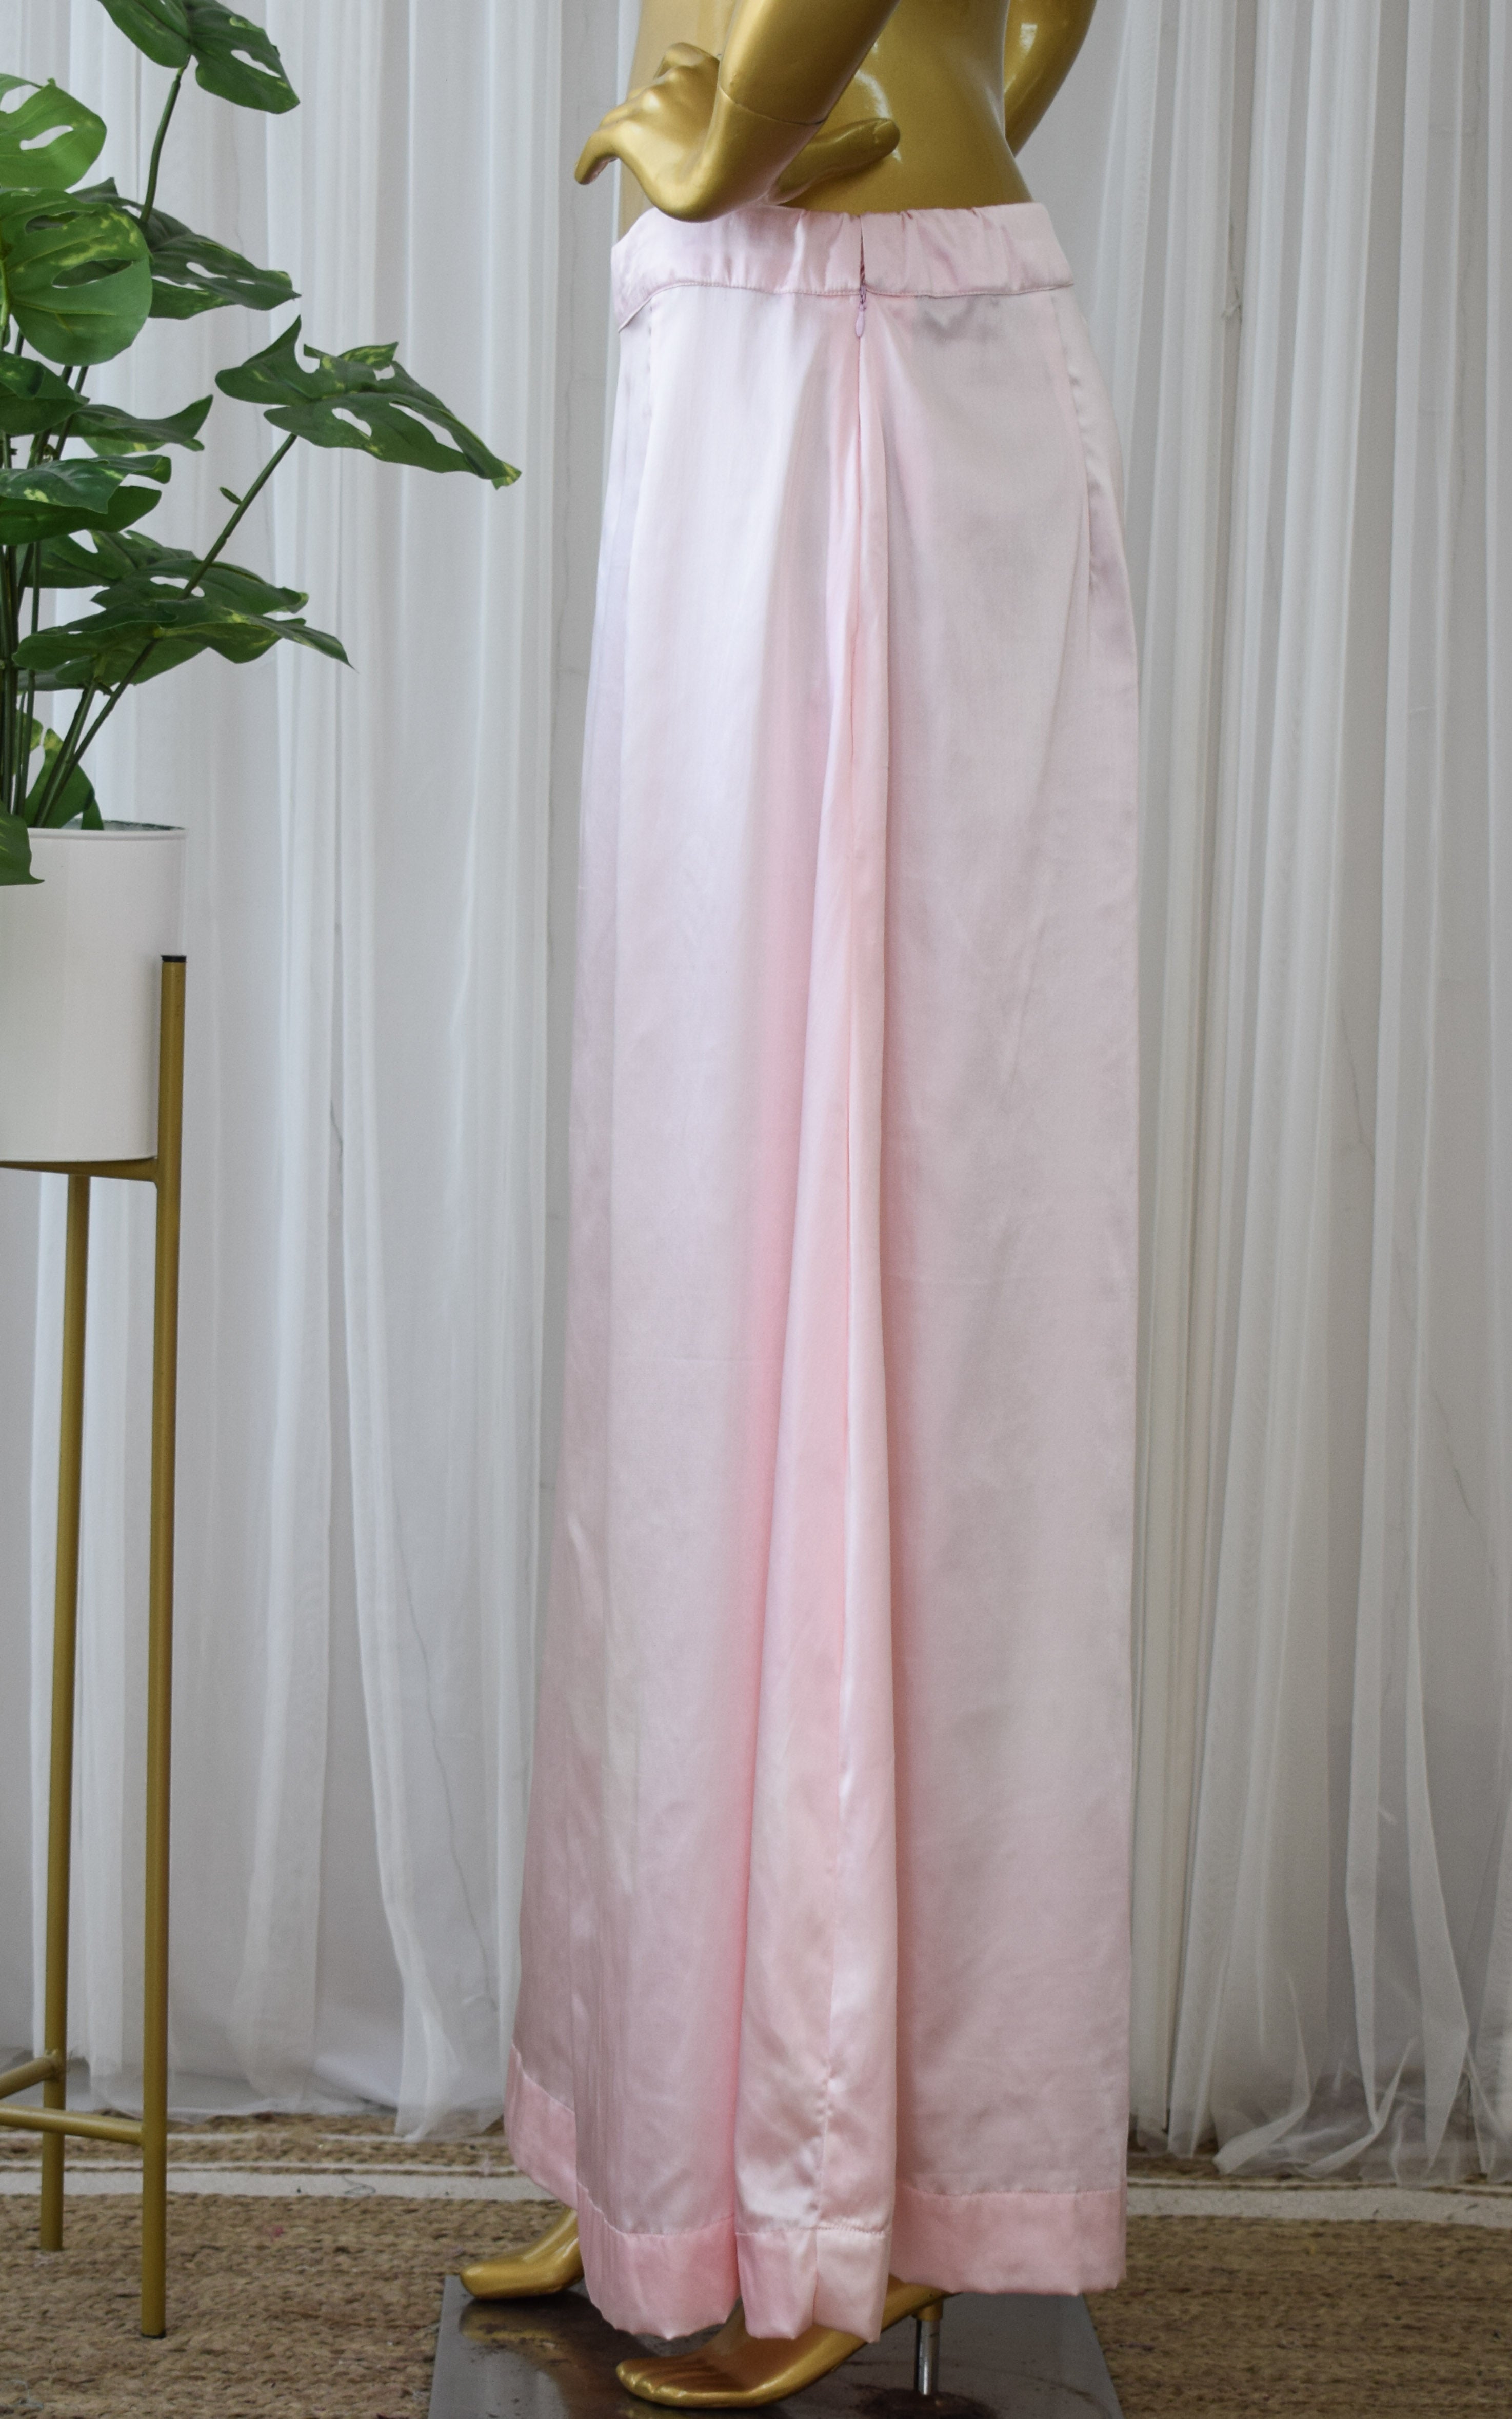 Satin Petticoat (Saree Underskirt)